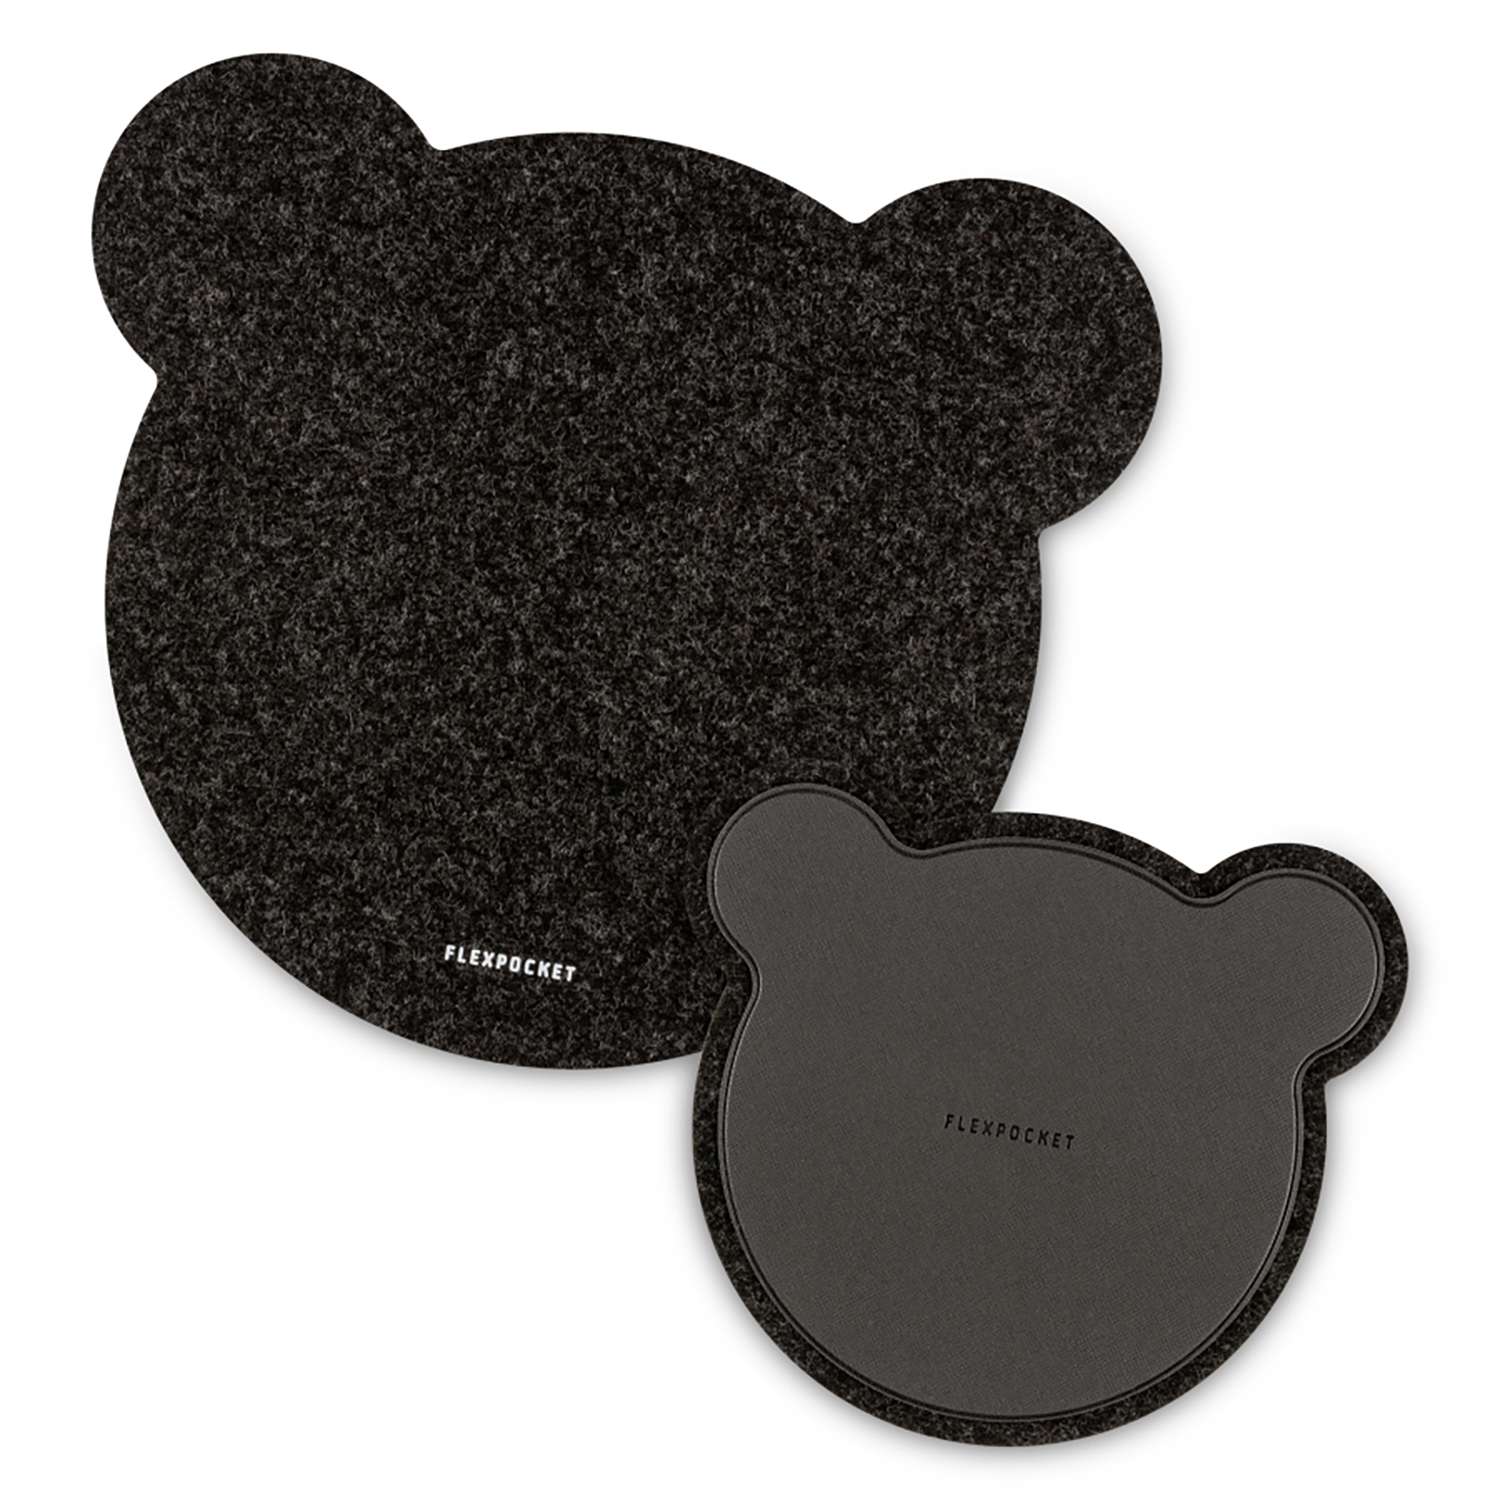 Настольный коврик Flexpocket для мыши в виде медведя с подставкой под кружку черный 2 шт в комплекте - фото 1